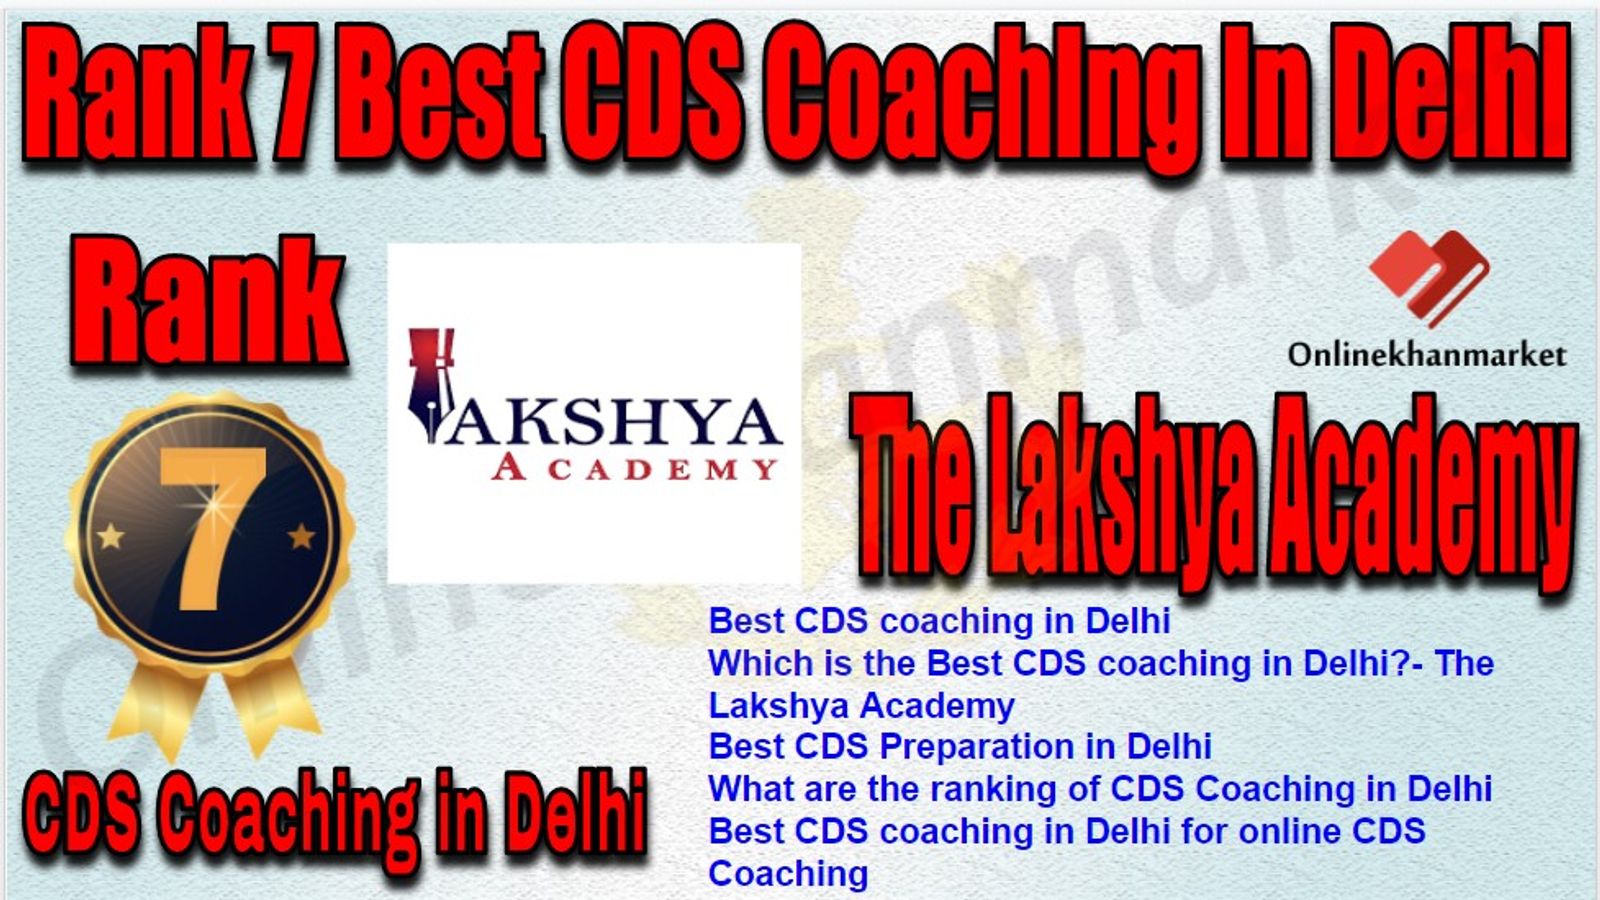 Rank 7 Best CDS Coaching in Delhi